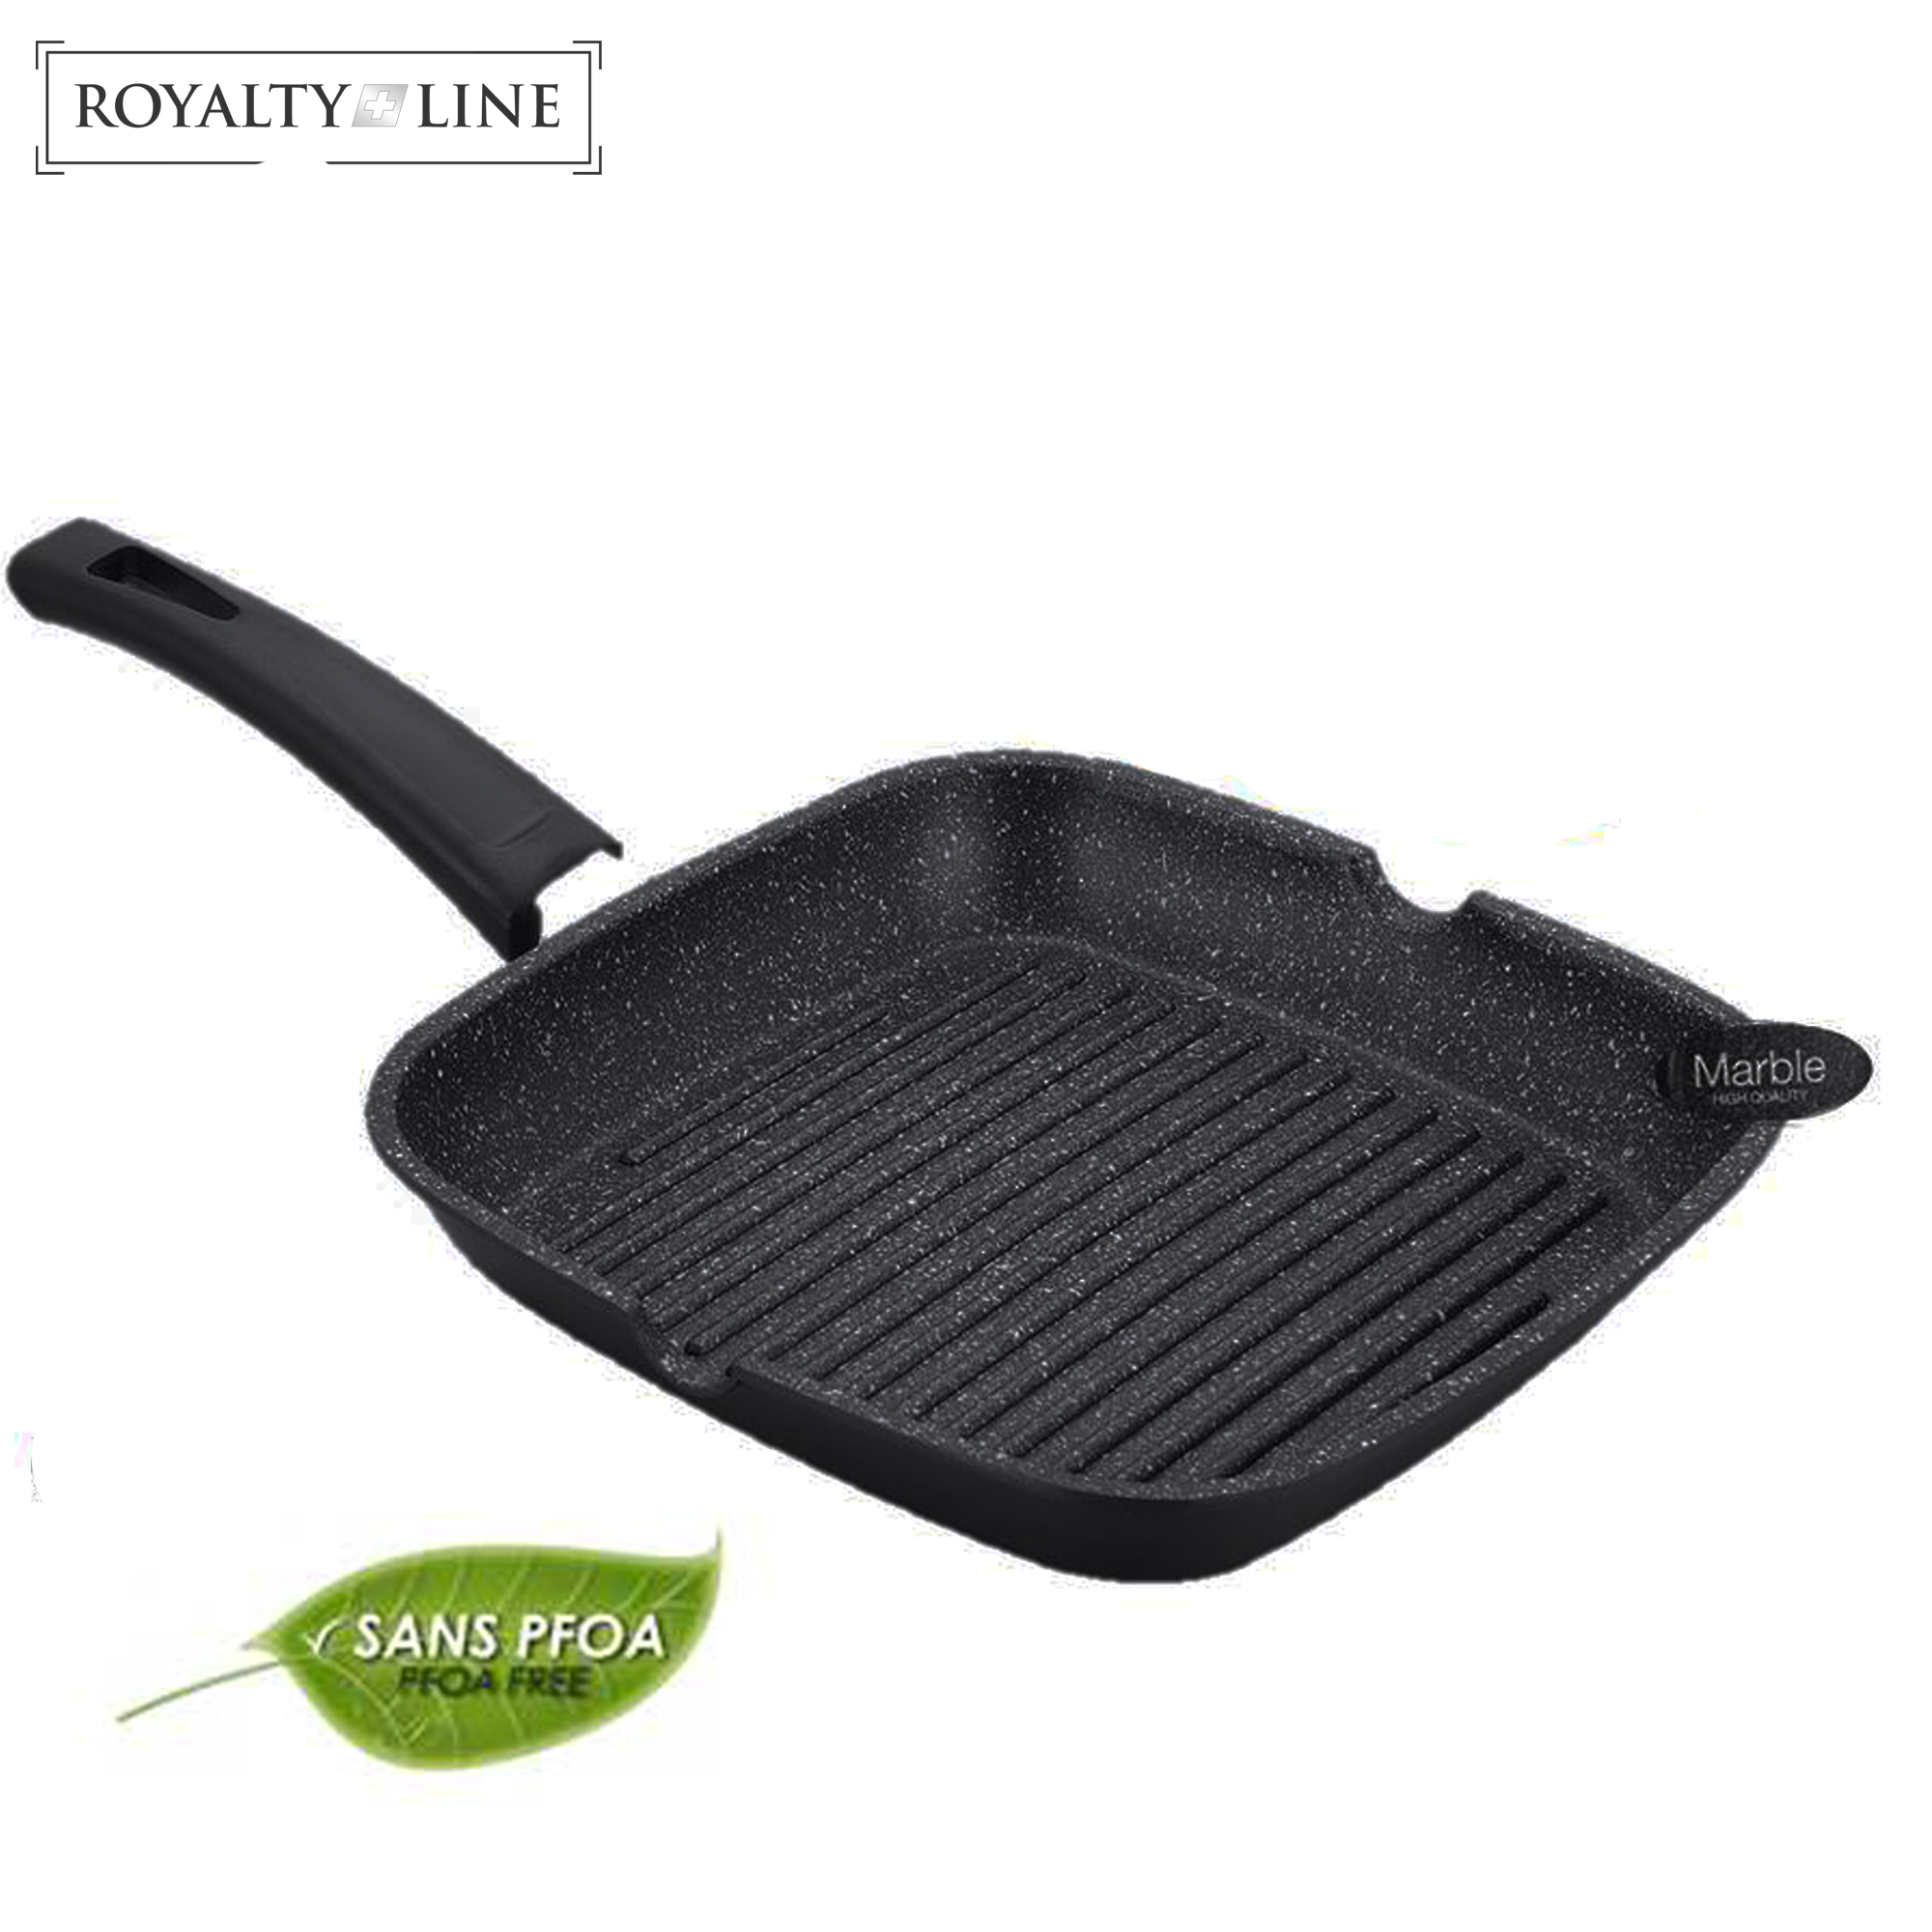 Royalty Line Padella grill da 28 cm con rivestimento in pietra